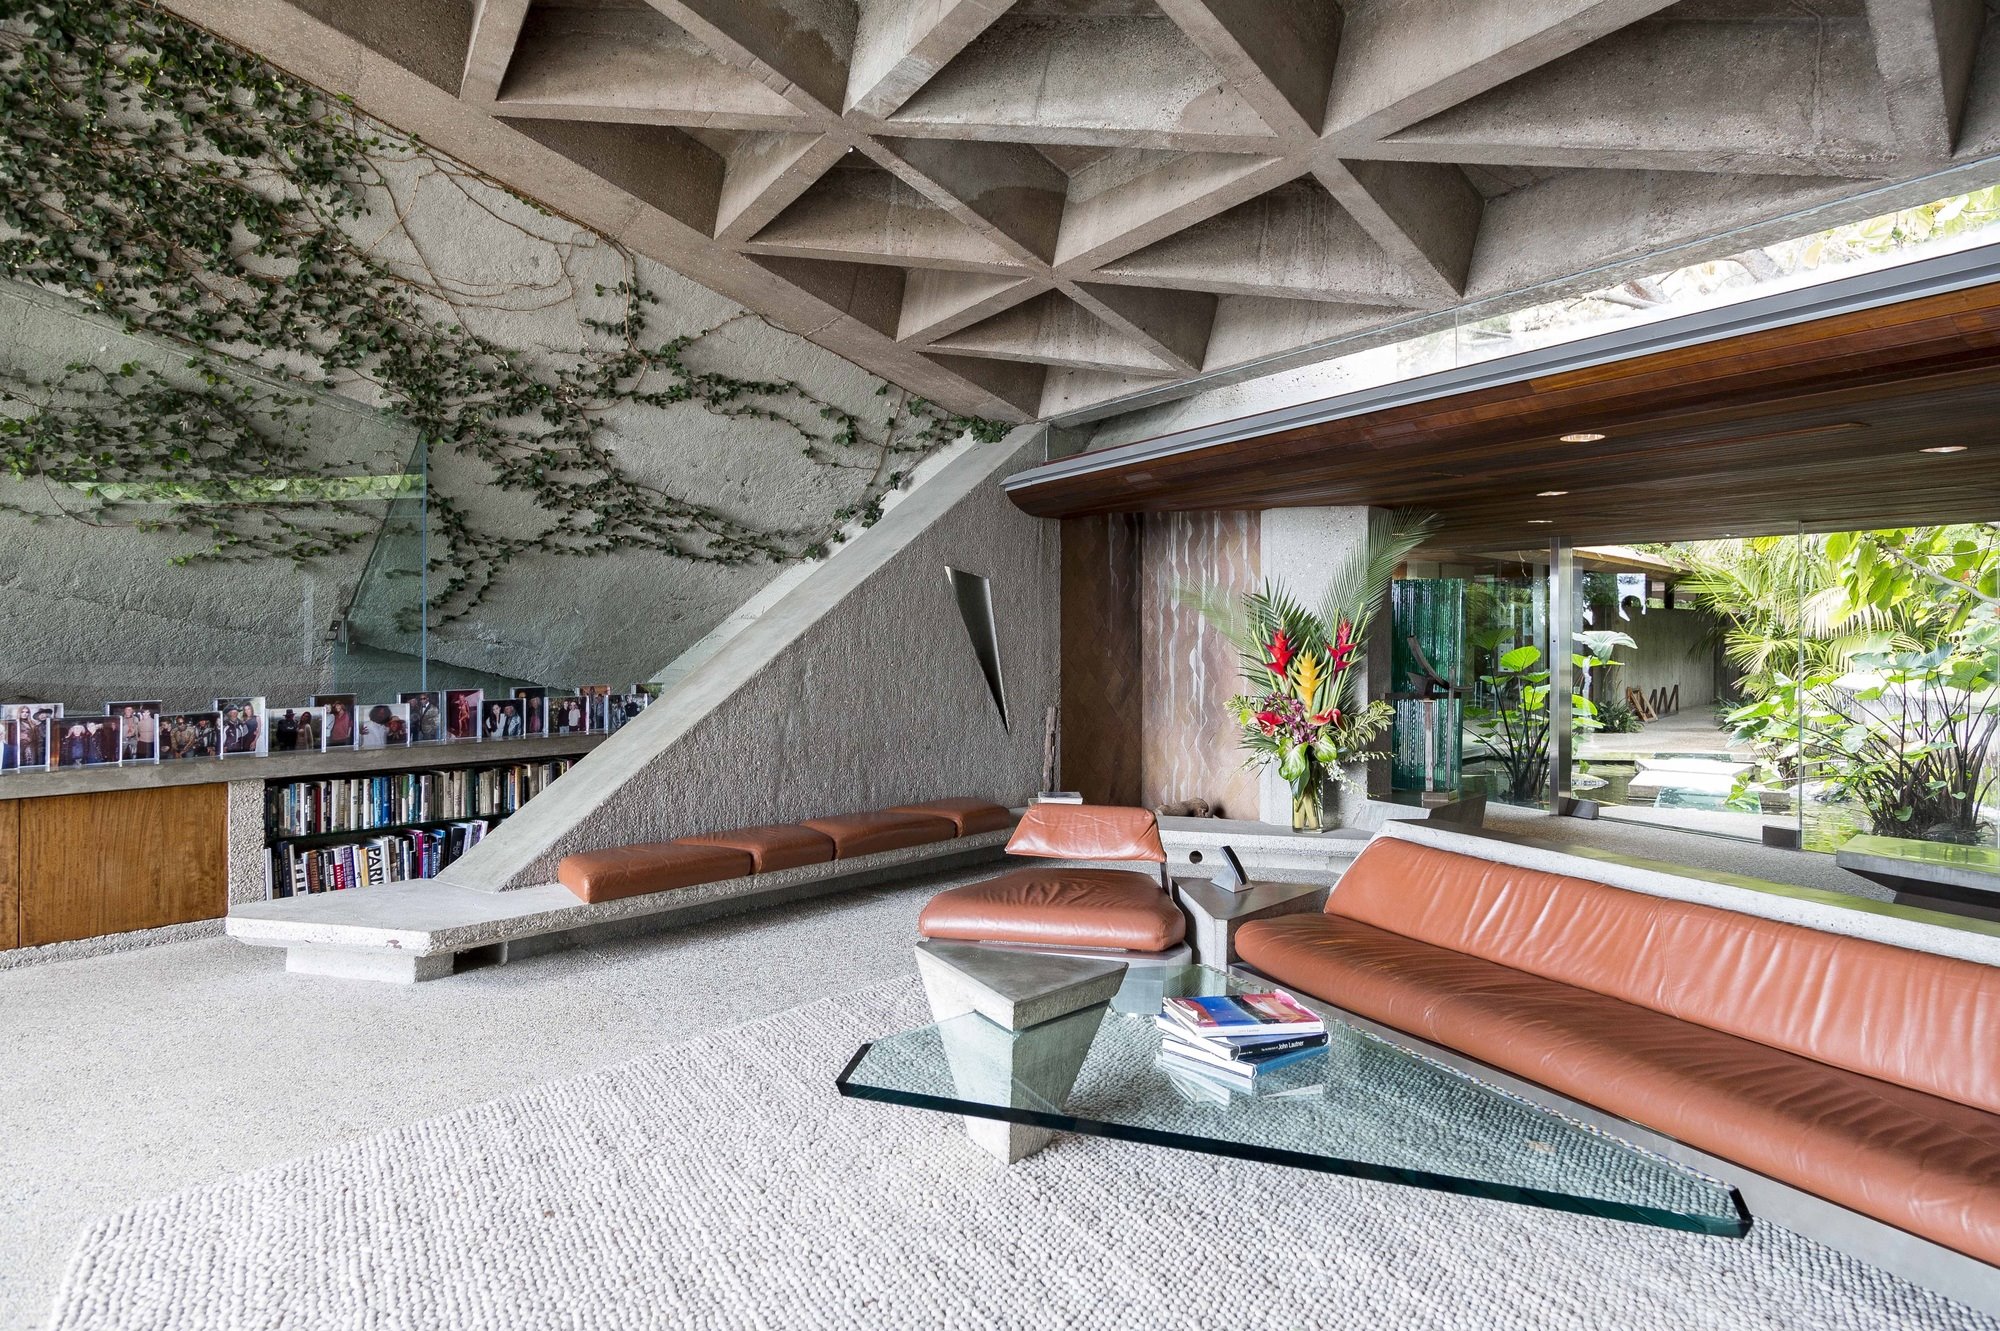 Salon con sofas de cuero y techo de hormigon de la casa Goldstein Los Angeles